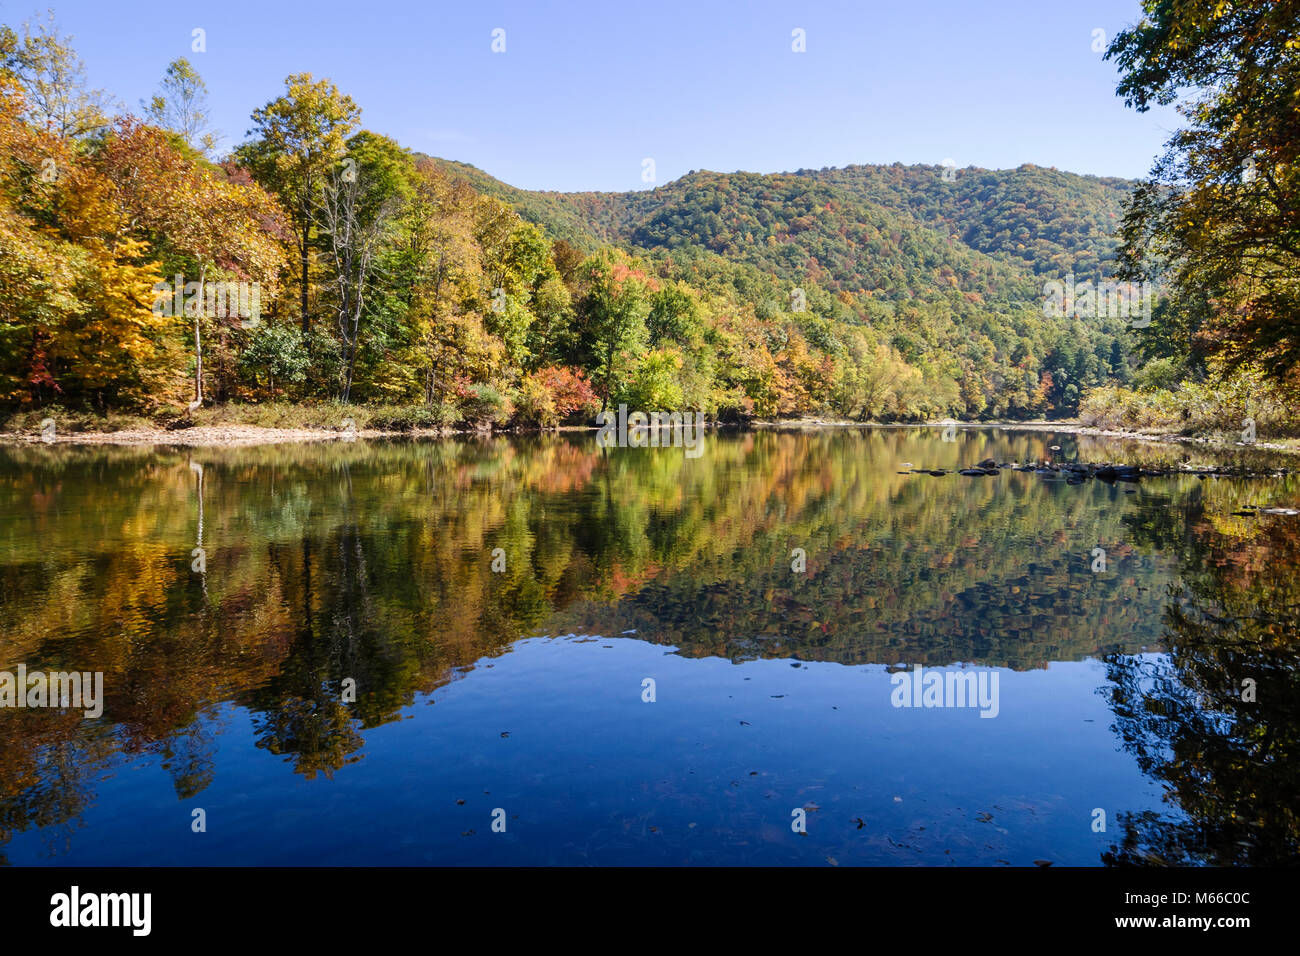 Virginie occidentale,Appalachia Greenbrier County,Greenbrier River,eau,affluent,Allegheny Mountains,arbres,couleurs d'automne,changement de feuilles,automne,saison,arbres,nous Banque D'Images